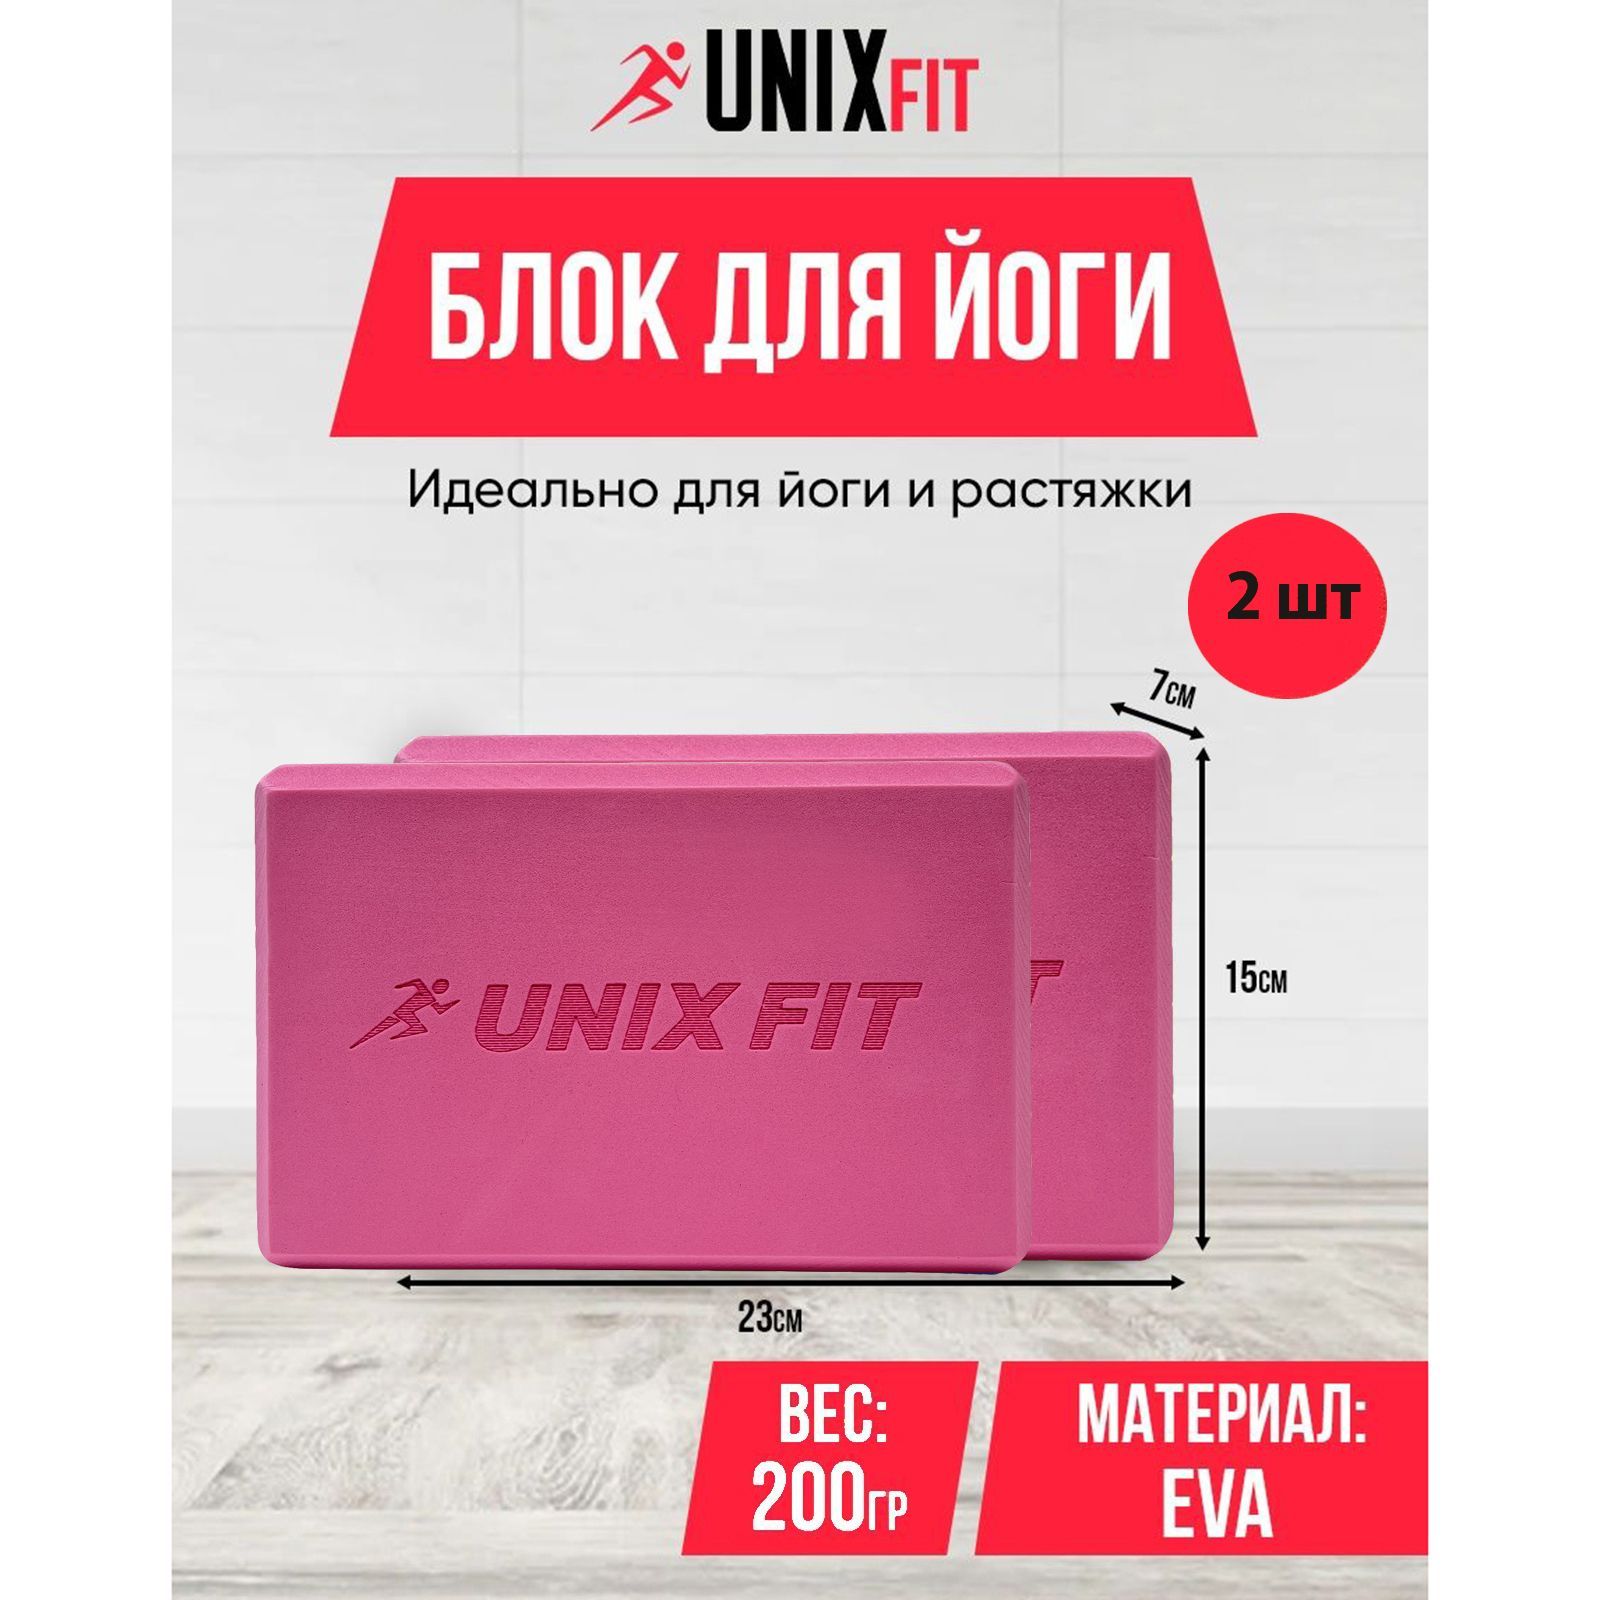 Блок для йоги и фитнеса UNIXFIT 200g розовый, блок для пилатеса и растяжки, кубик, 2 шт.